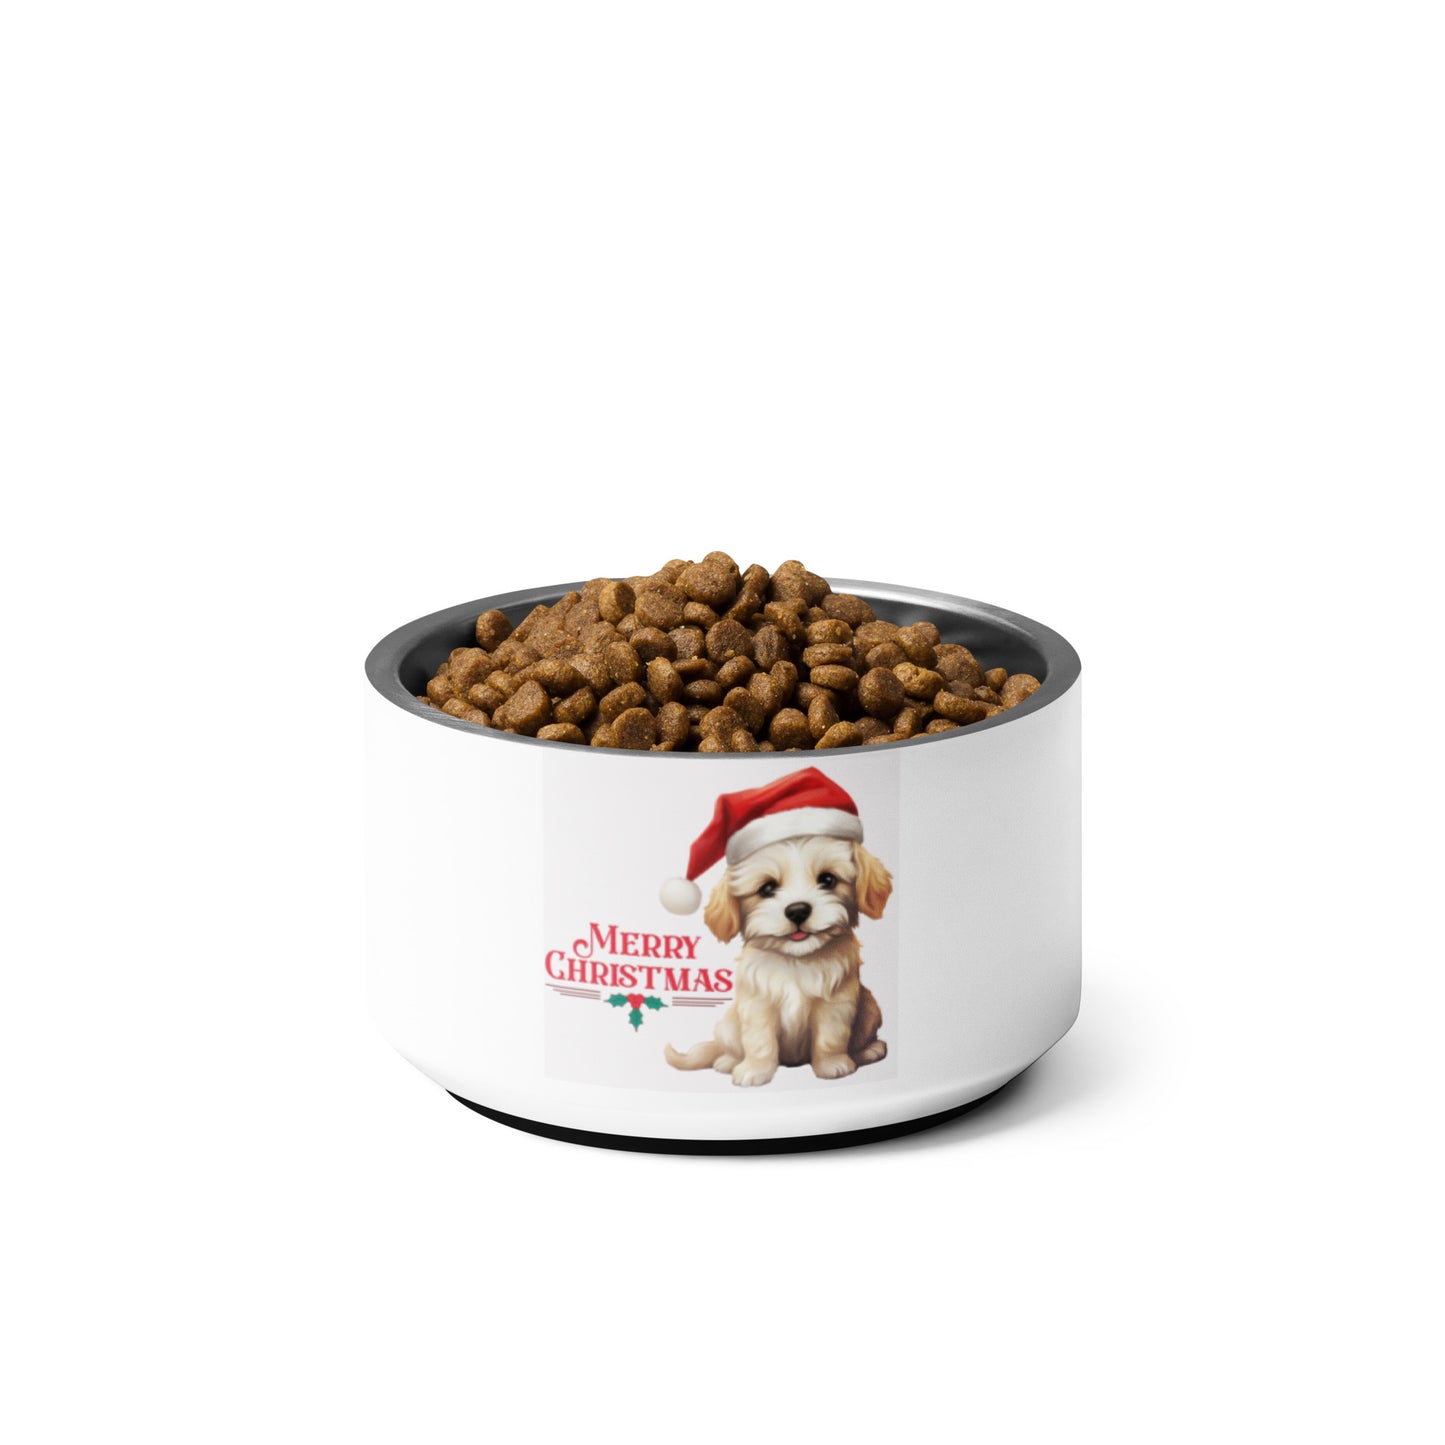 Pup Christmas Pet bowl